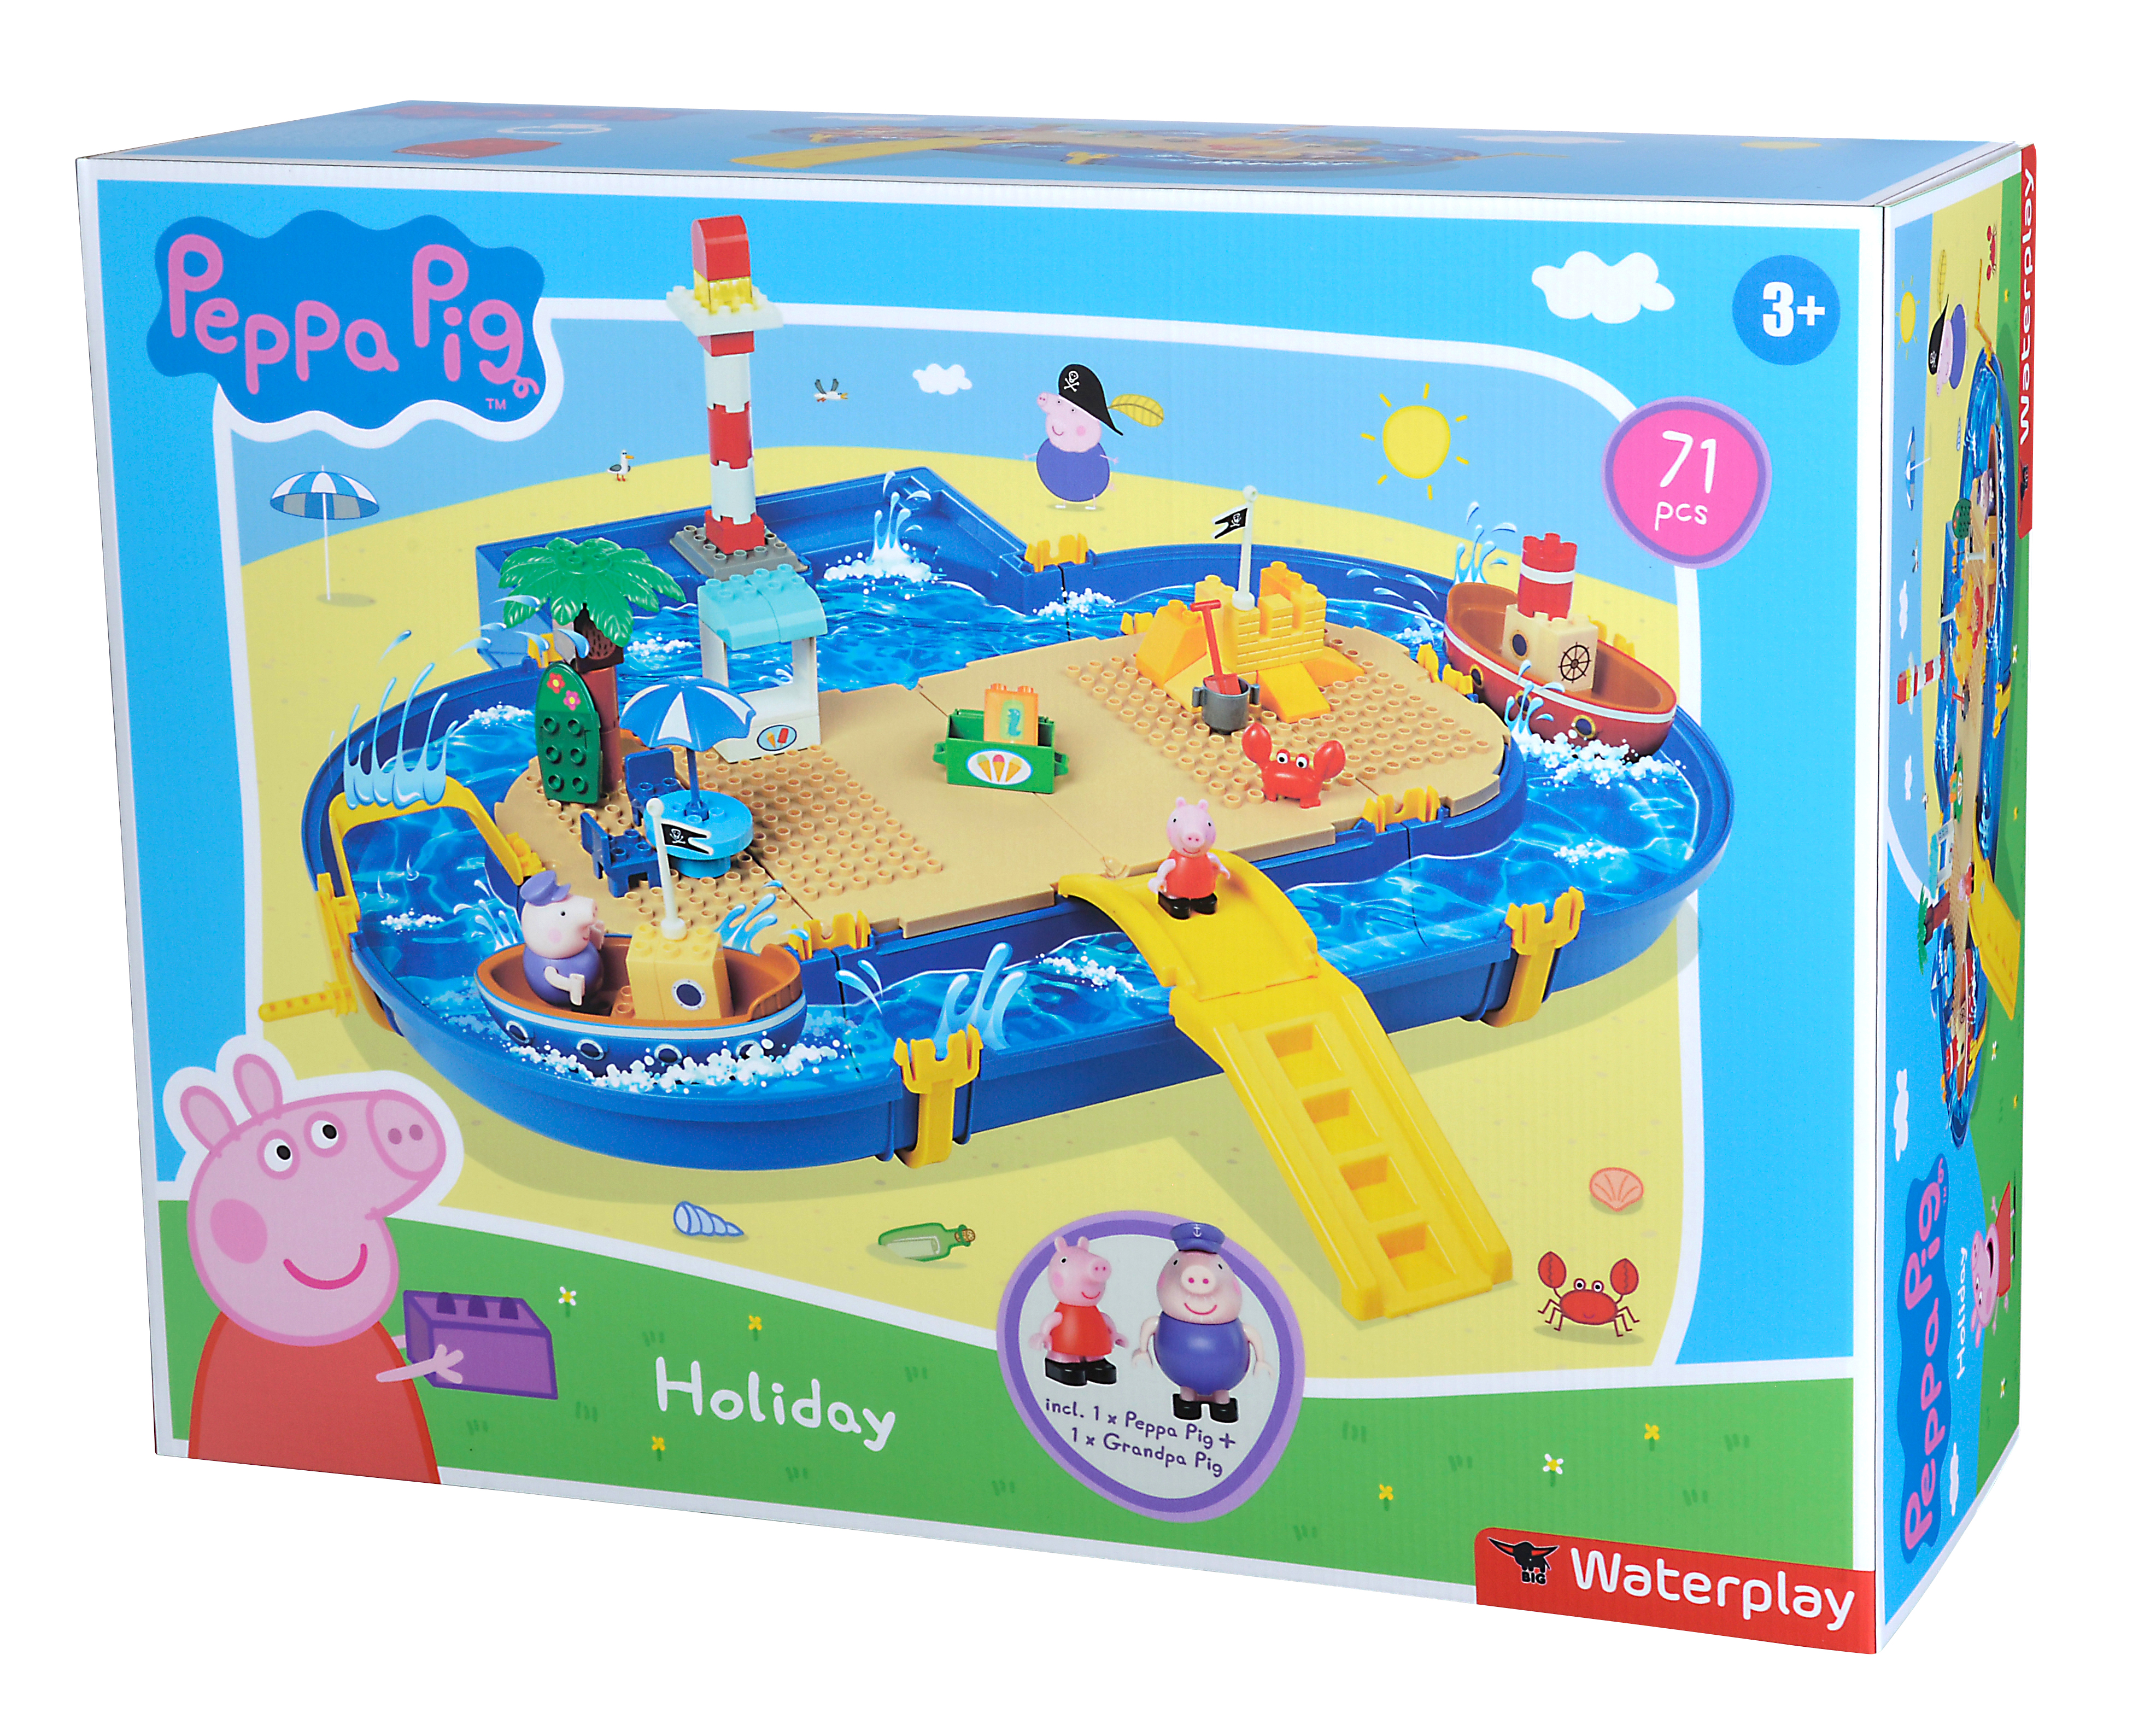 BIG Waterplay Peppa Pig Holiday Wasserspielset Blau